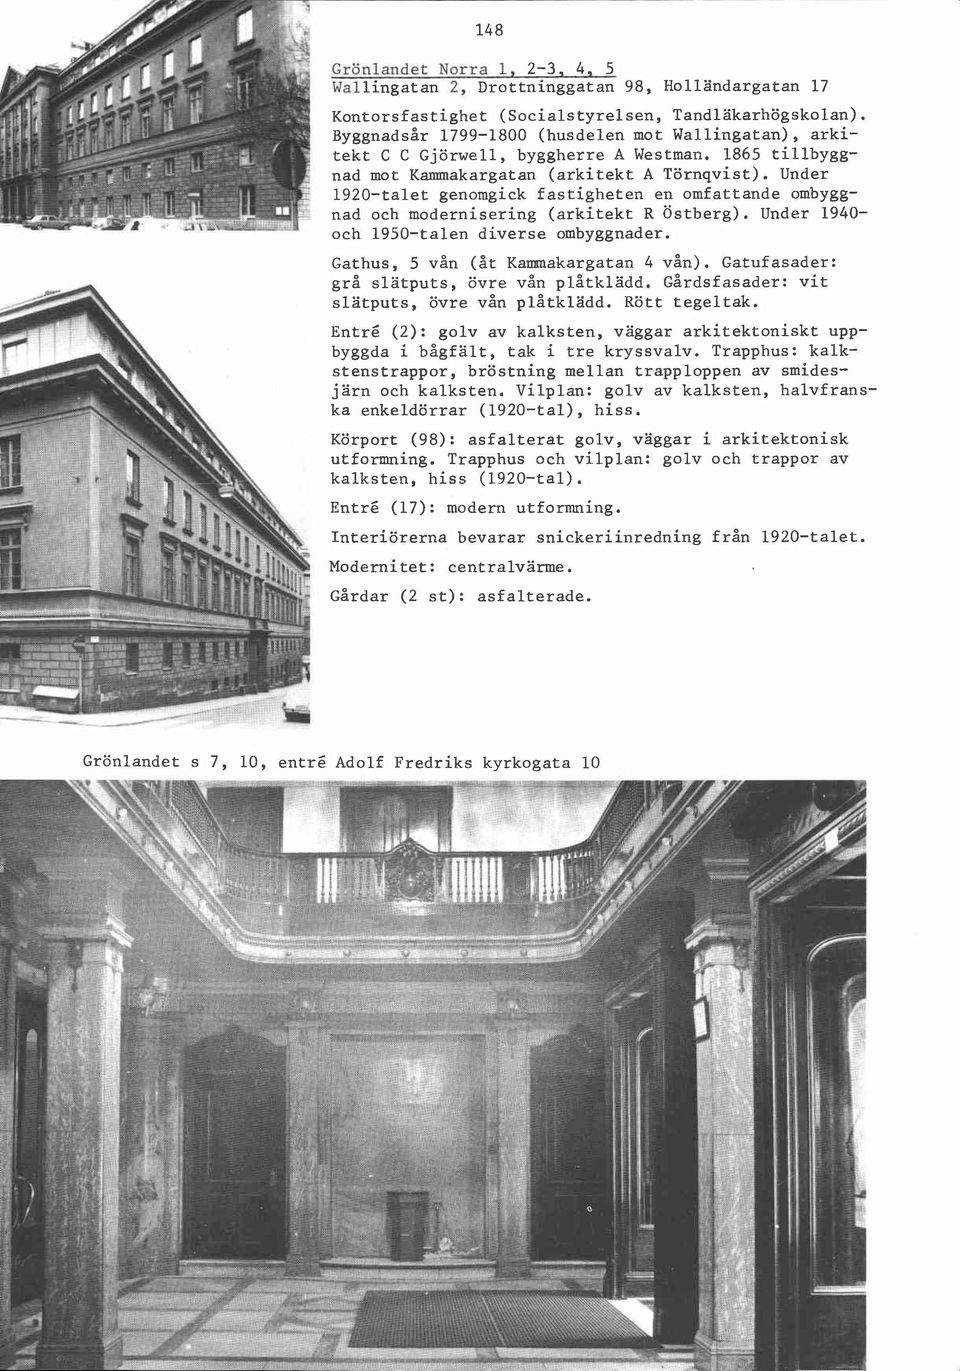 Under 1920-talet genomgick fastigheten en omfattande ombyggnad och modernisering (arkitekt R Östberg). Under 1940- och 1950-talen diverse ombyggnader. Gathus, 5 vån (åt Kammakargatan 4 vån).